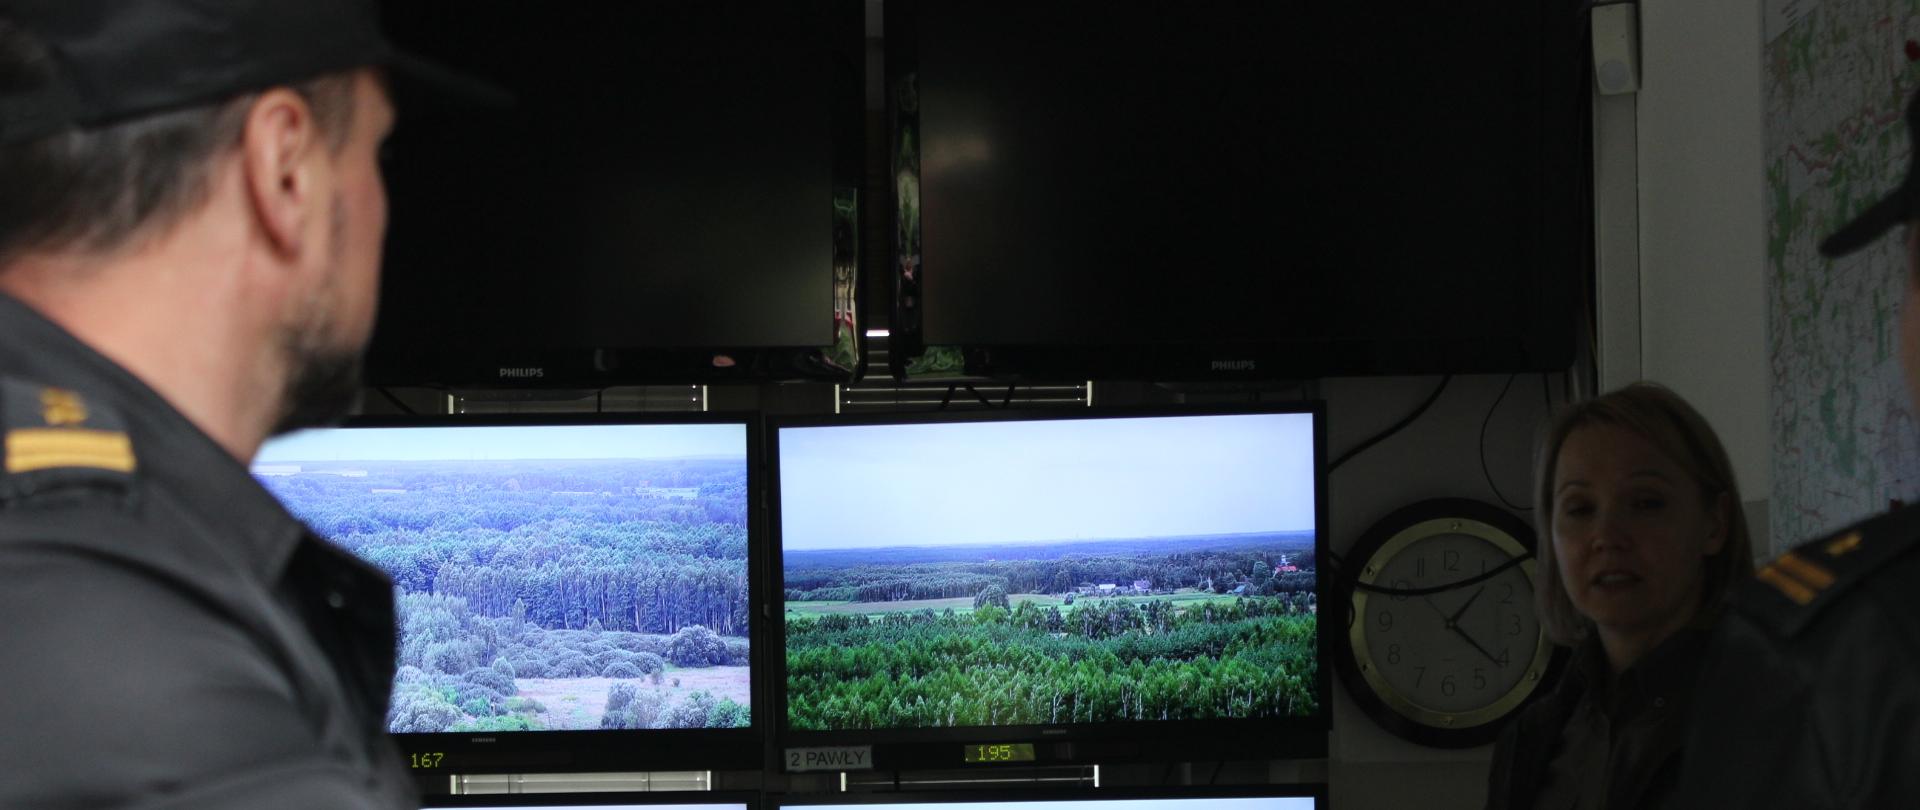 Przedstawiciele Państwowej Straży Pożarnej w punkcie alarmowo-dyspozycyjnym Nadleśnictwa Bielsk podczas prezentacji systemu wczesnego wykrywania dymu. W tle monitory, na których wyświetlany jest obraz z kamer monitoringu oraz przedstawiciel nadleśnictwa prowadzący prezentację.